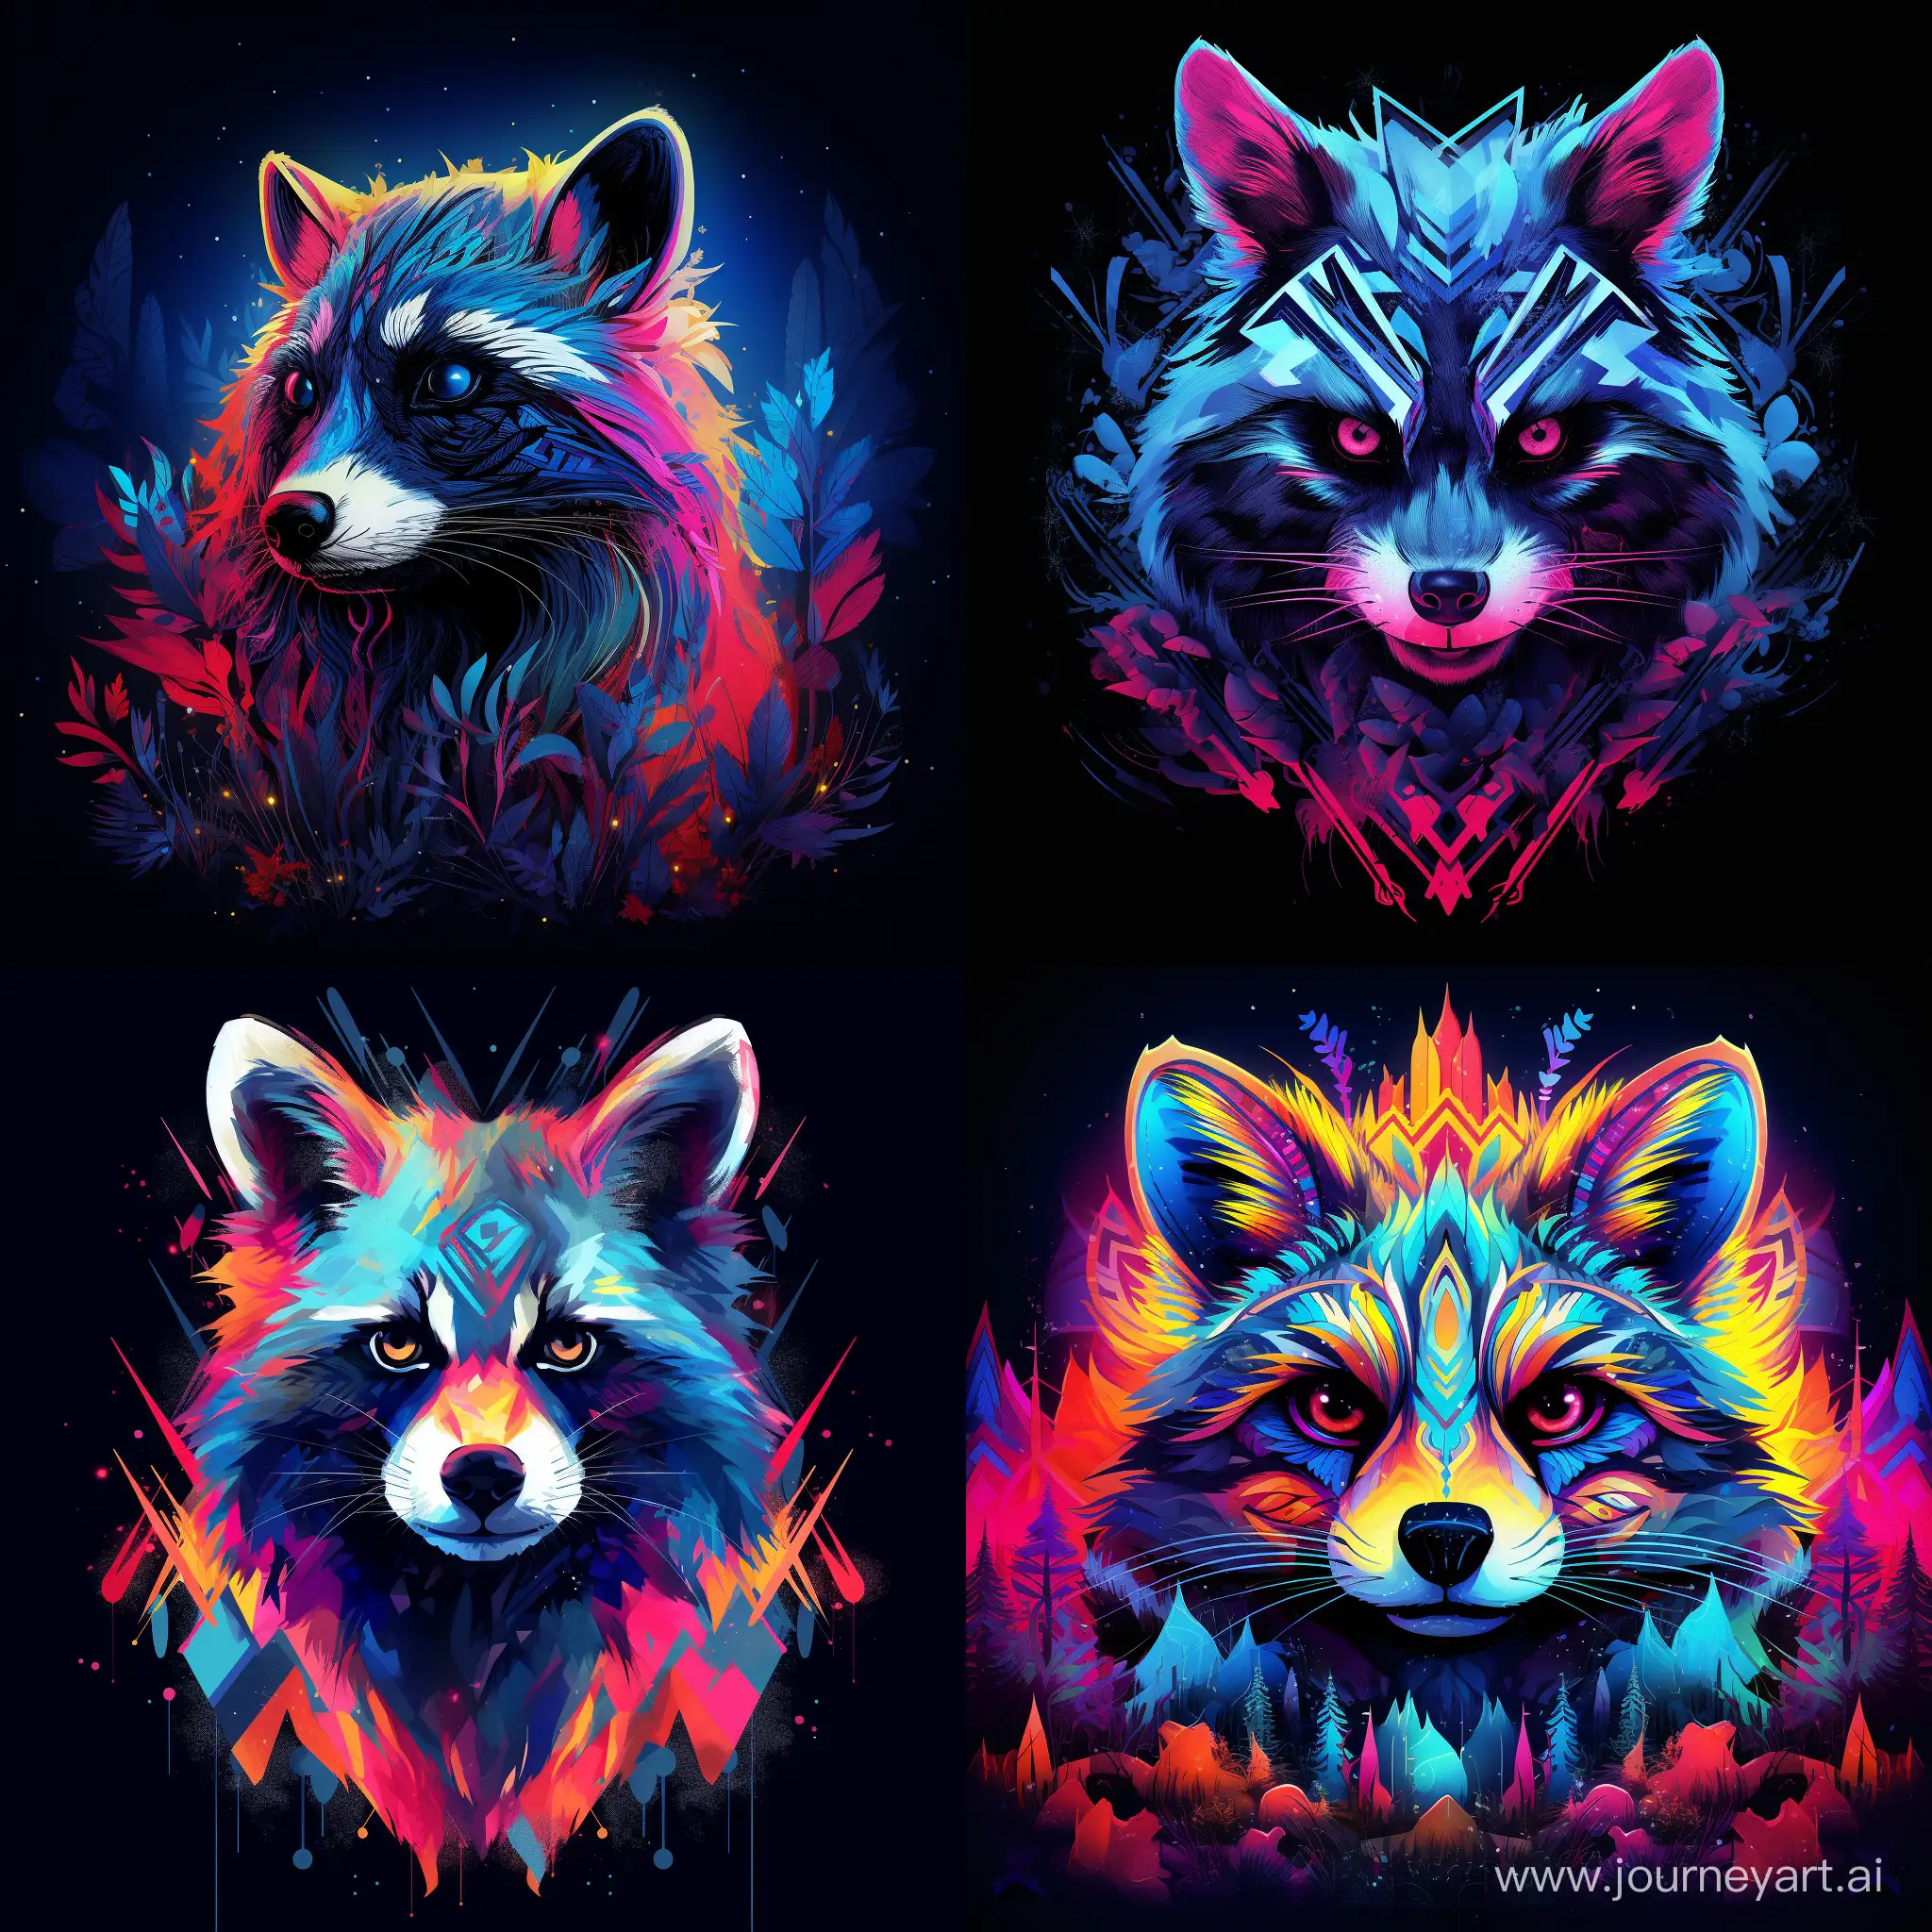 Vibrant-Neon-Raccoon-Art-A-Stunning-11-Aspect-Ratio-Masterpiece